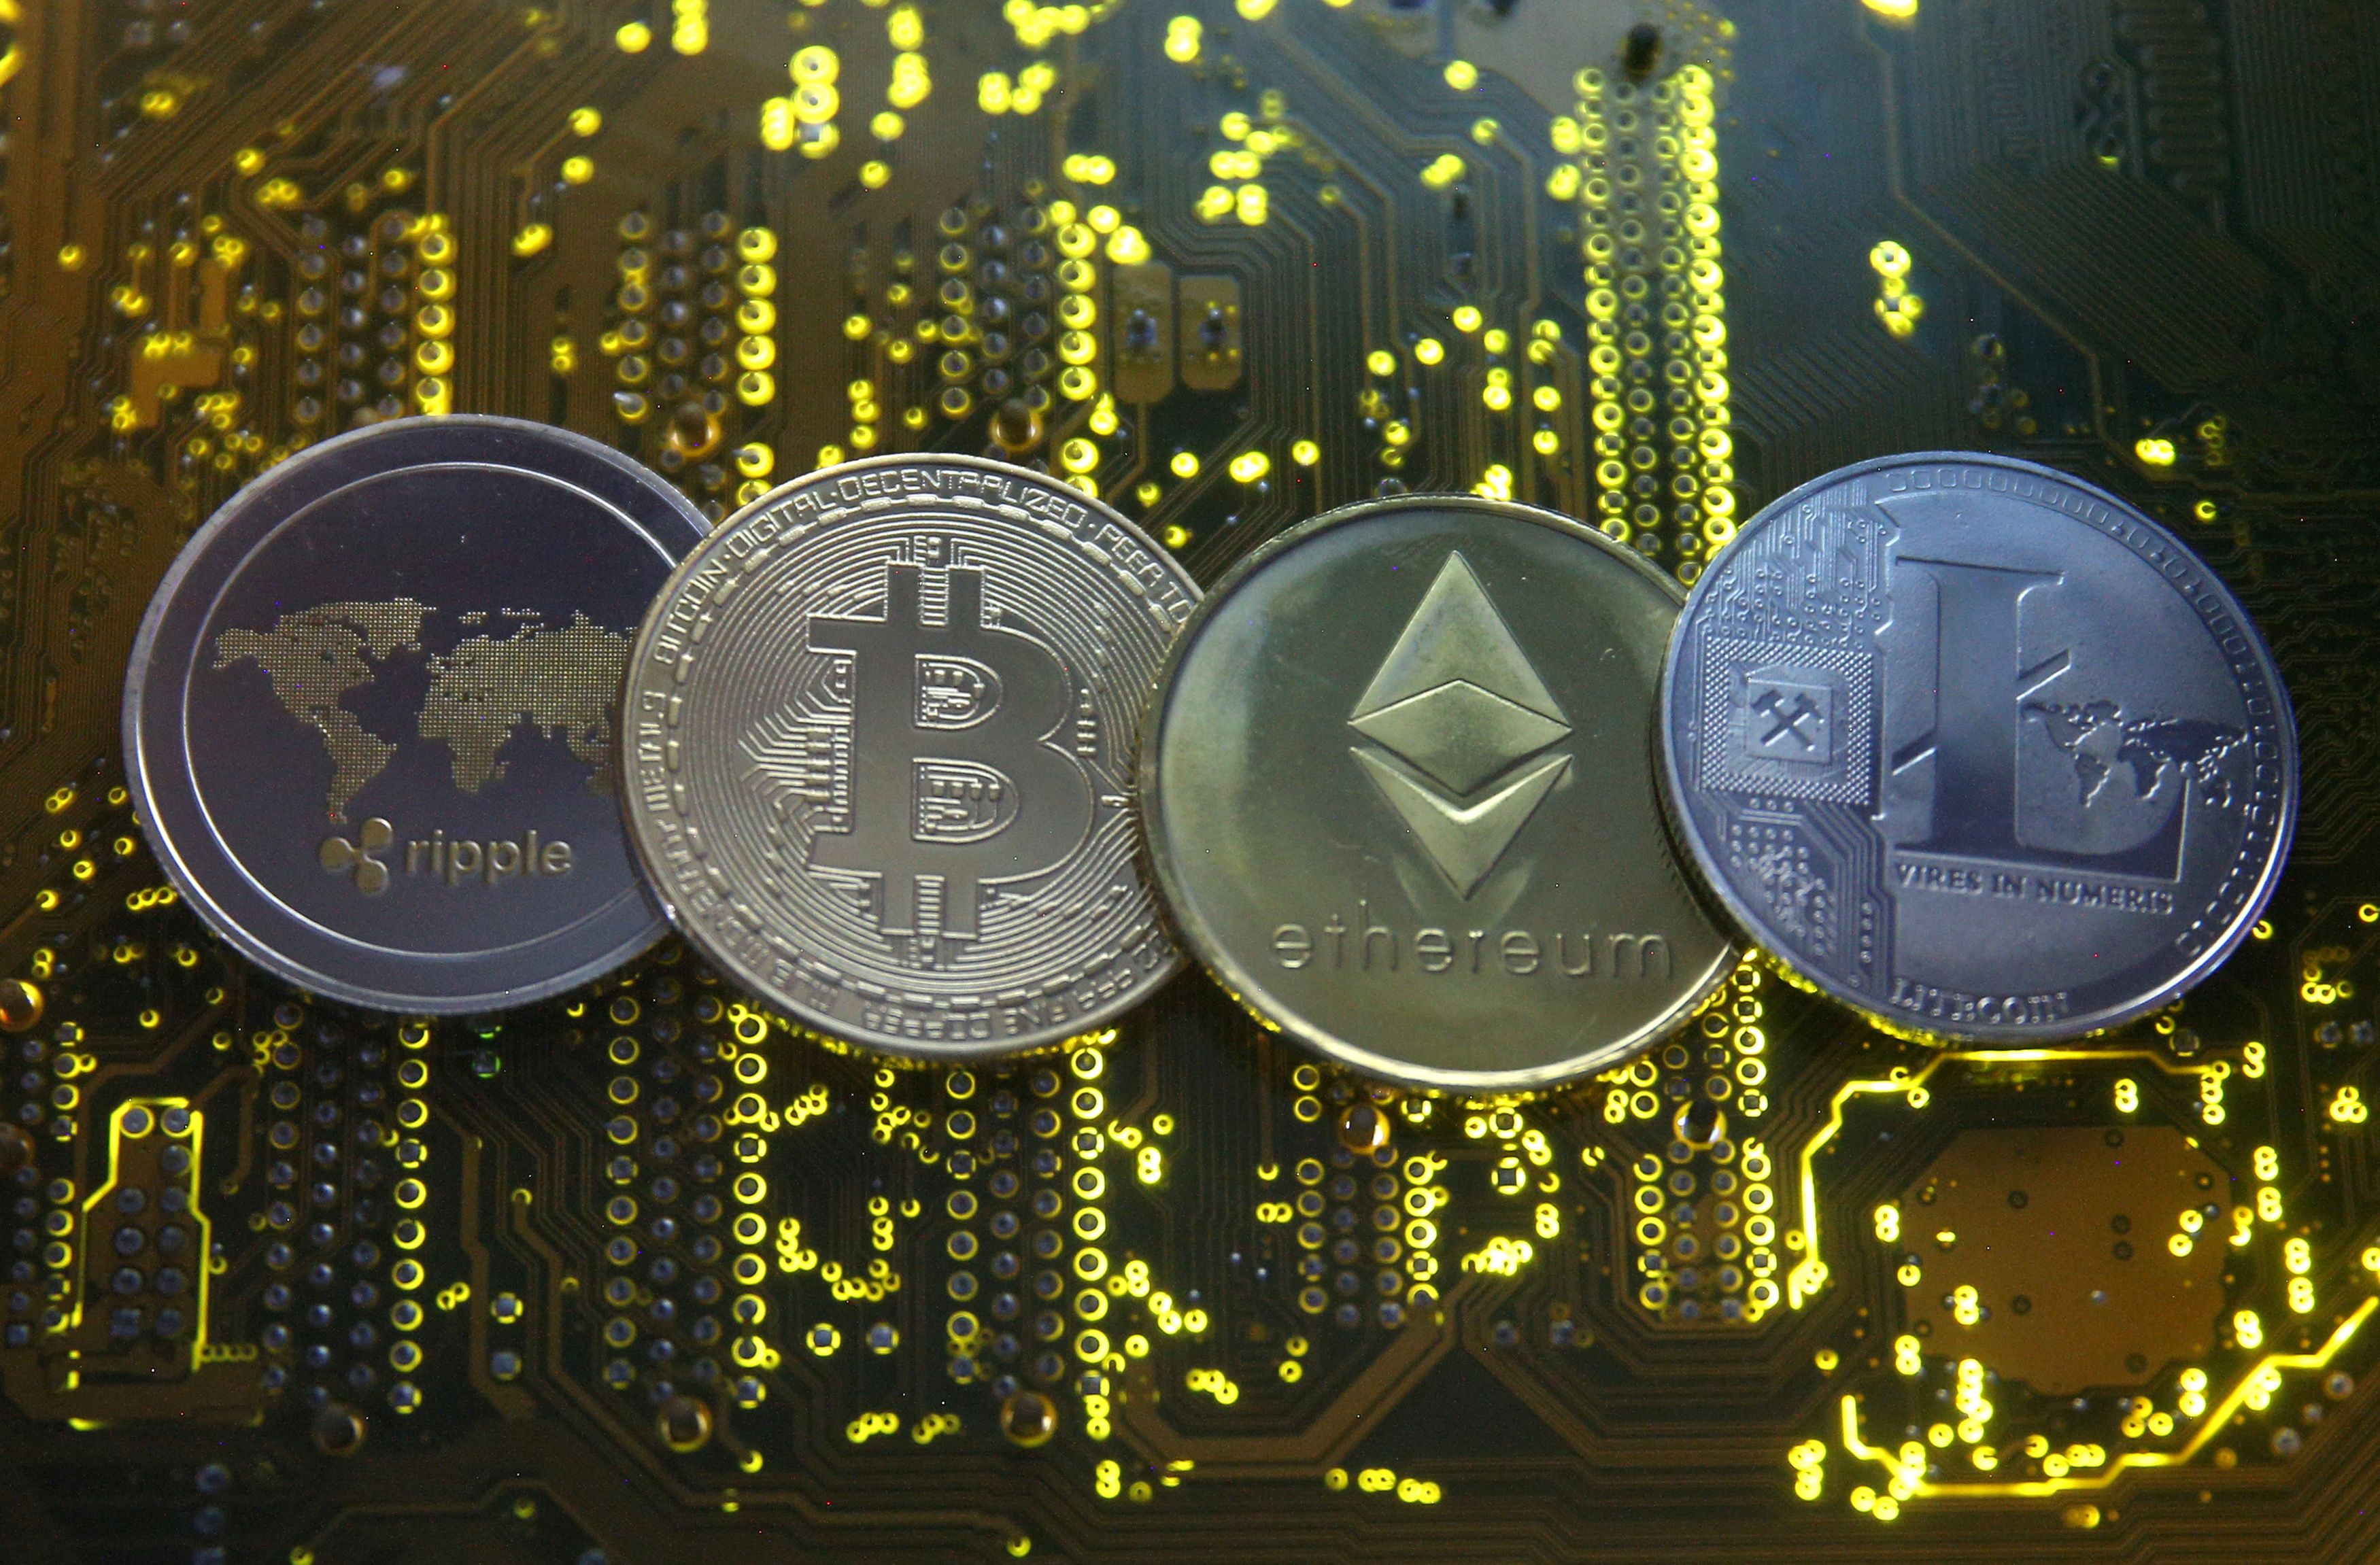 Las representaciones de las monedas virtuales Ripple, Bitcoin, Etherum y Litecoin se ven en la placa base en esta imagen ilustrativa